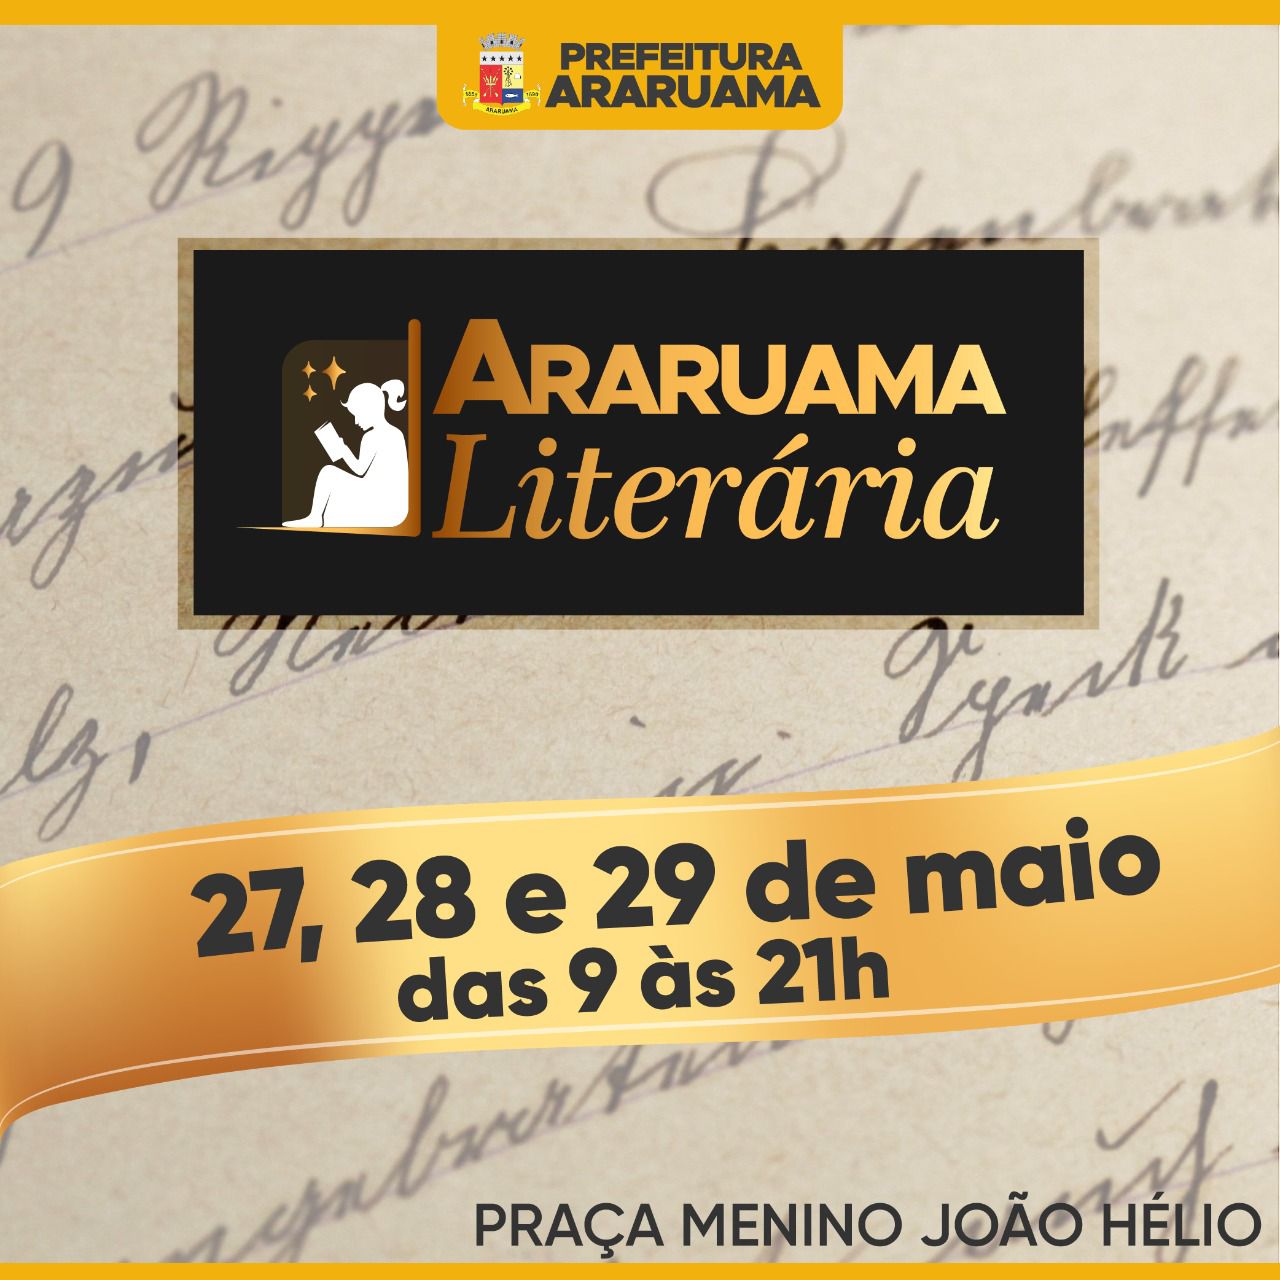 Prefeitura vai realizar o “Araruama Literária” com a presença de renomados escritores e artistas